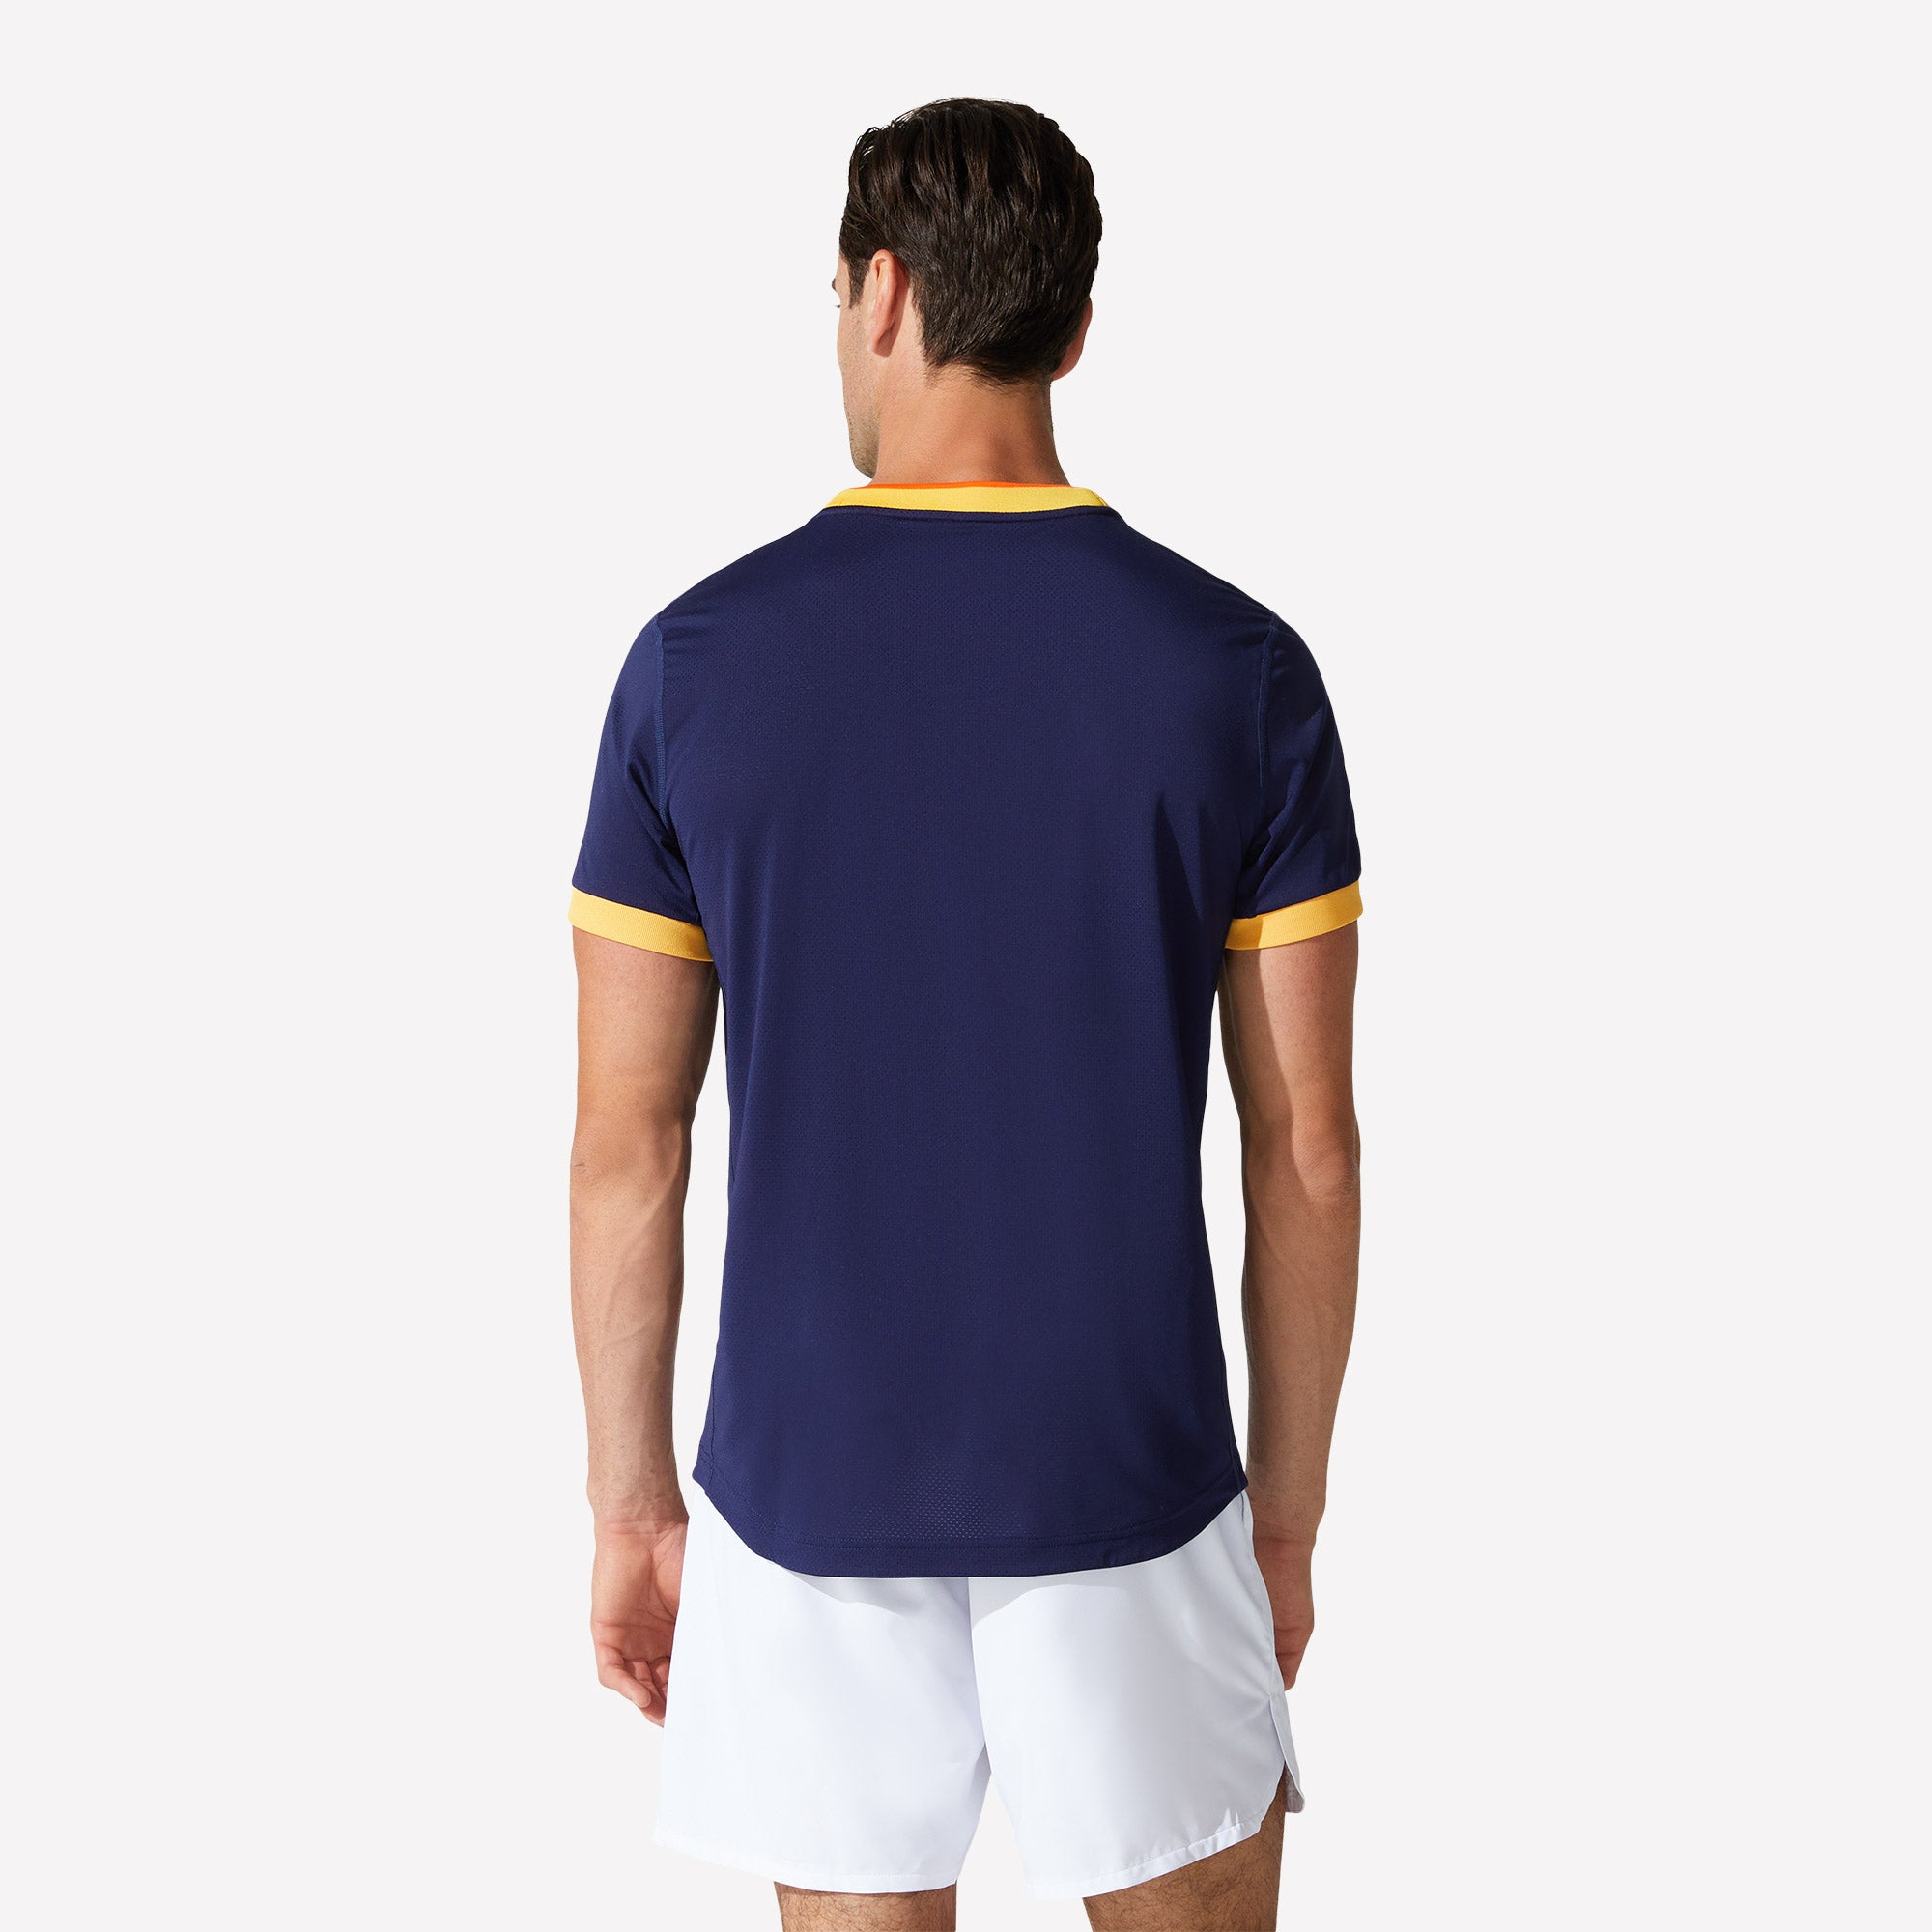 ASICS Match Men's Graphic Print Tennis Shirt Blue (2)